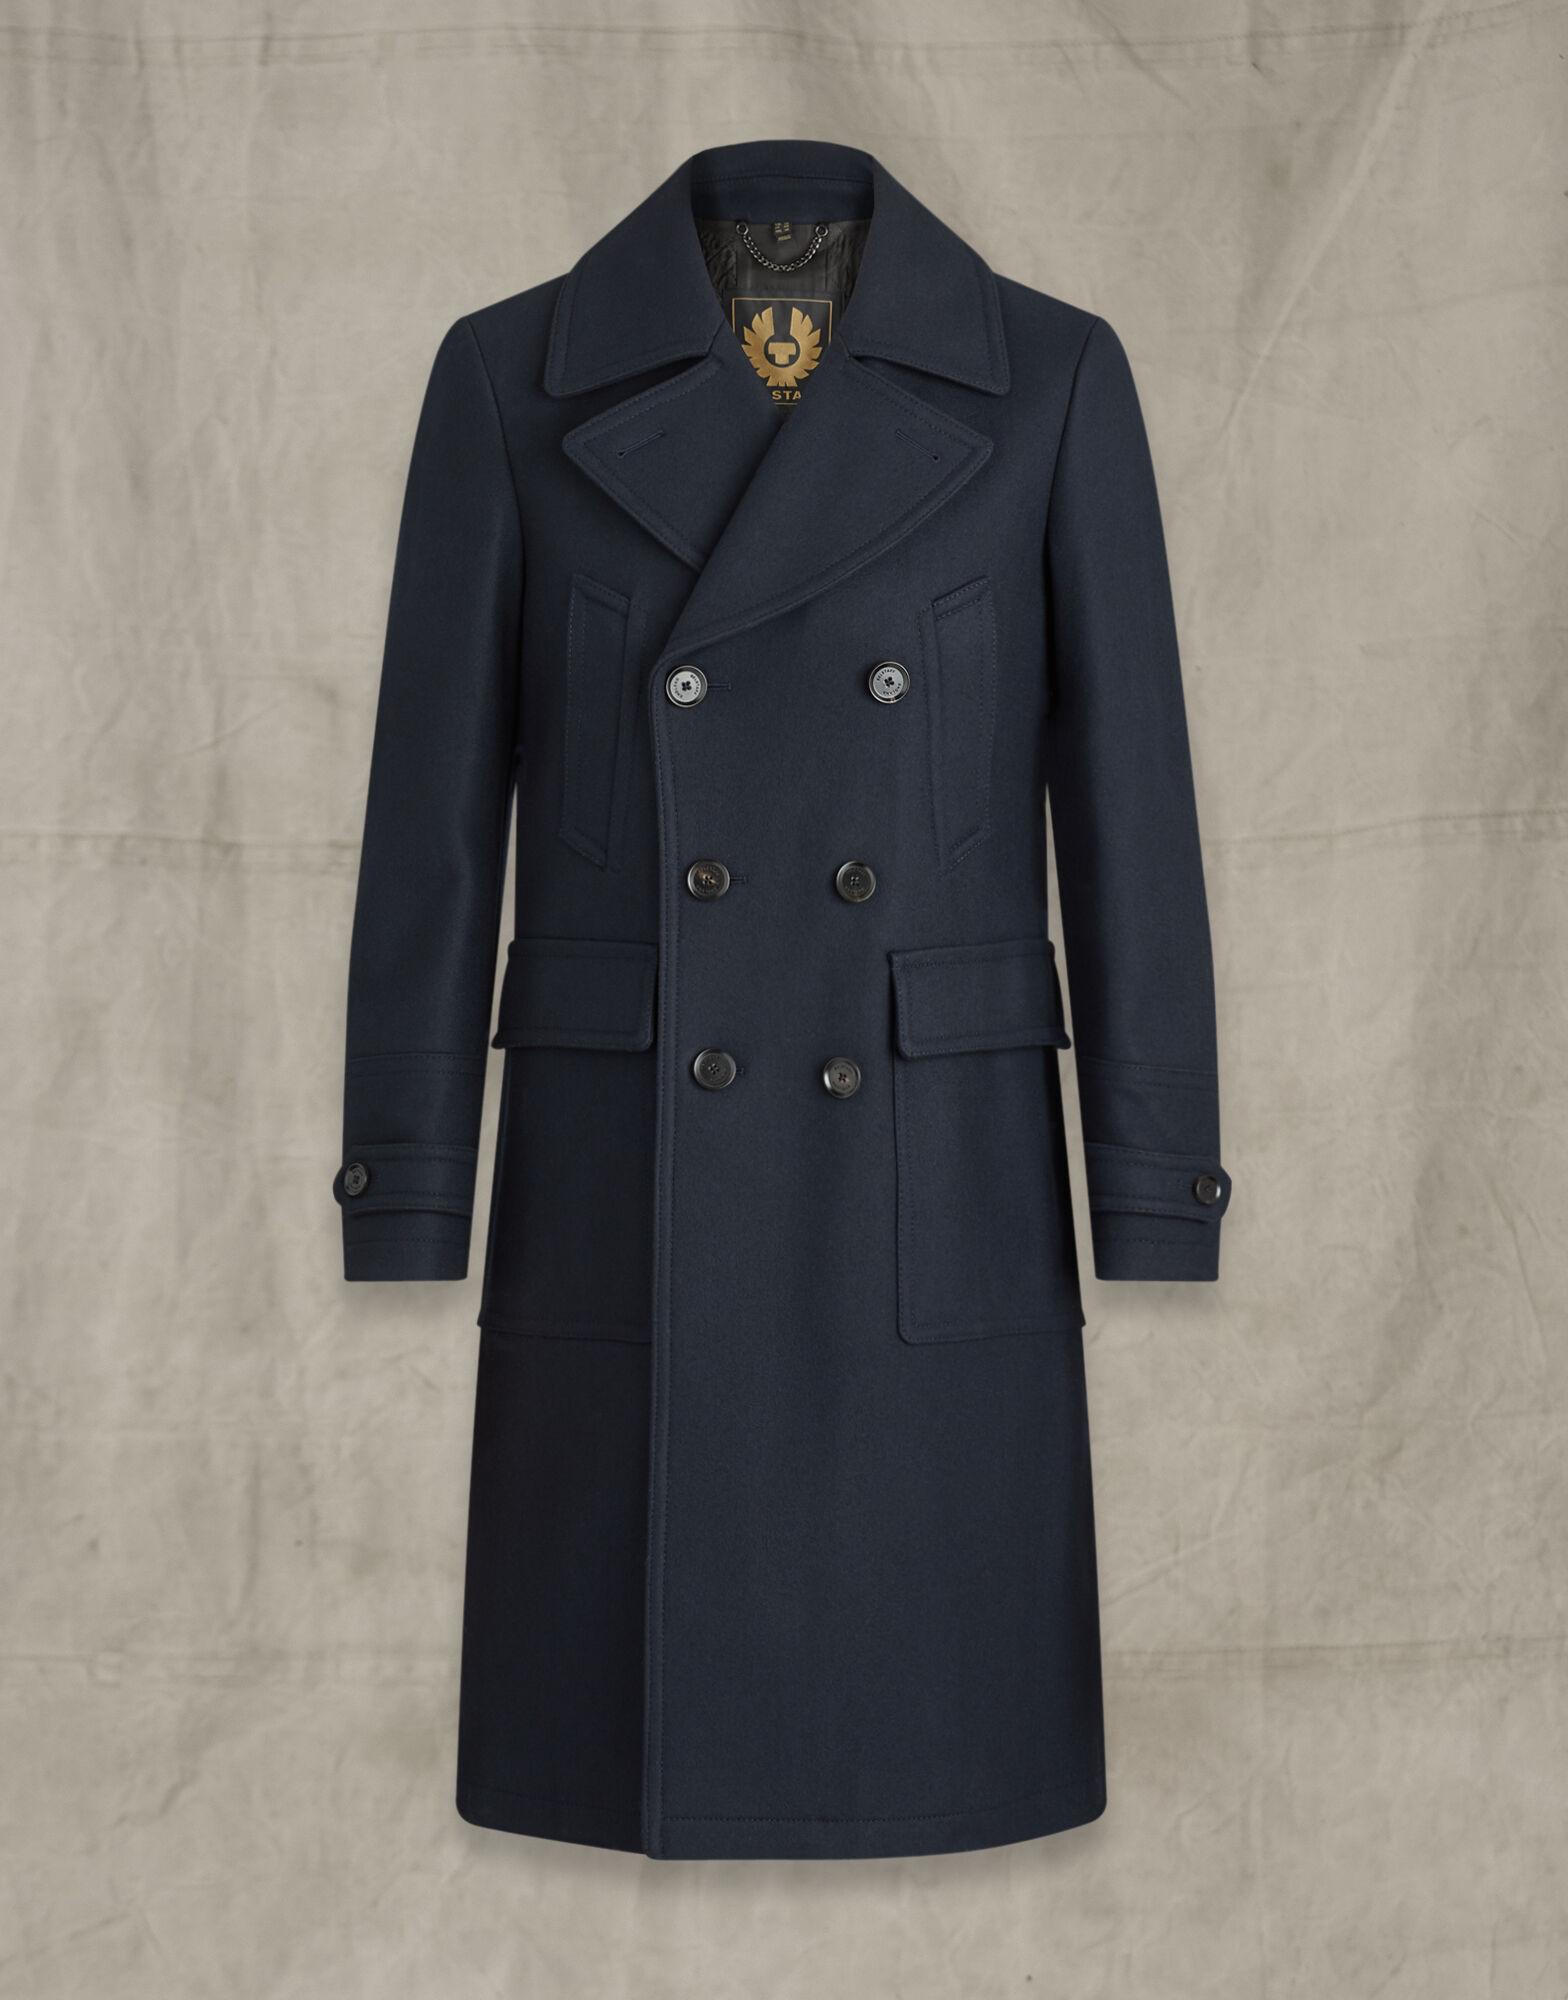 Belstaff Wool Milford Coat in Blue for Men - Lyst